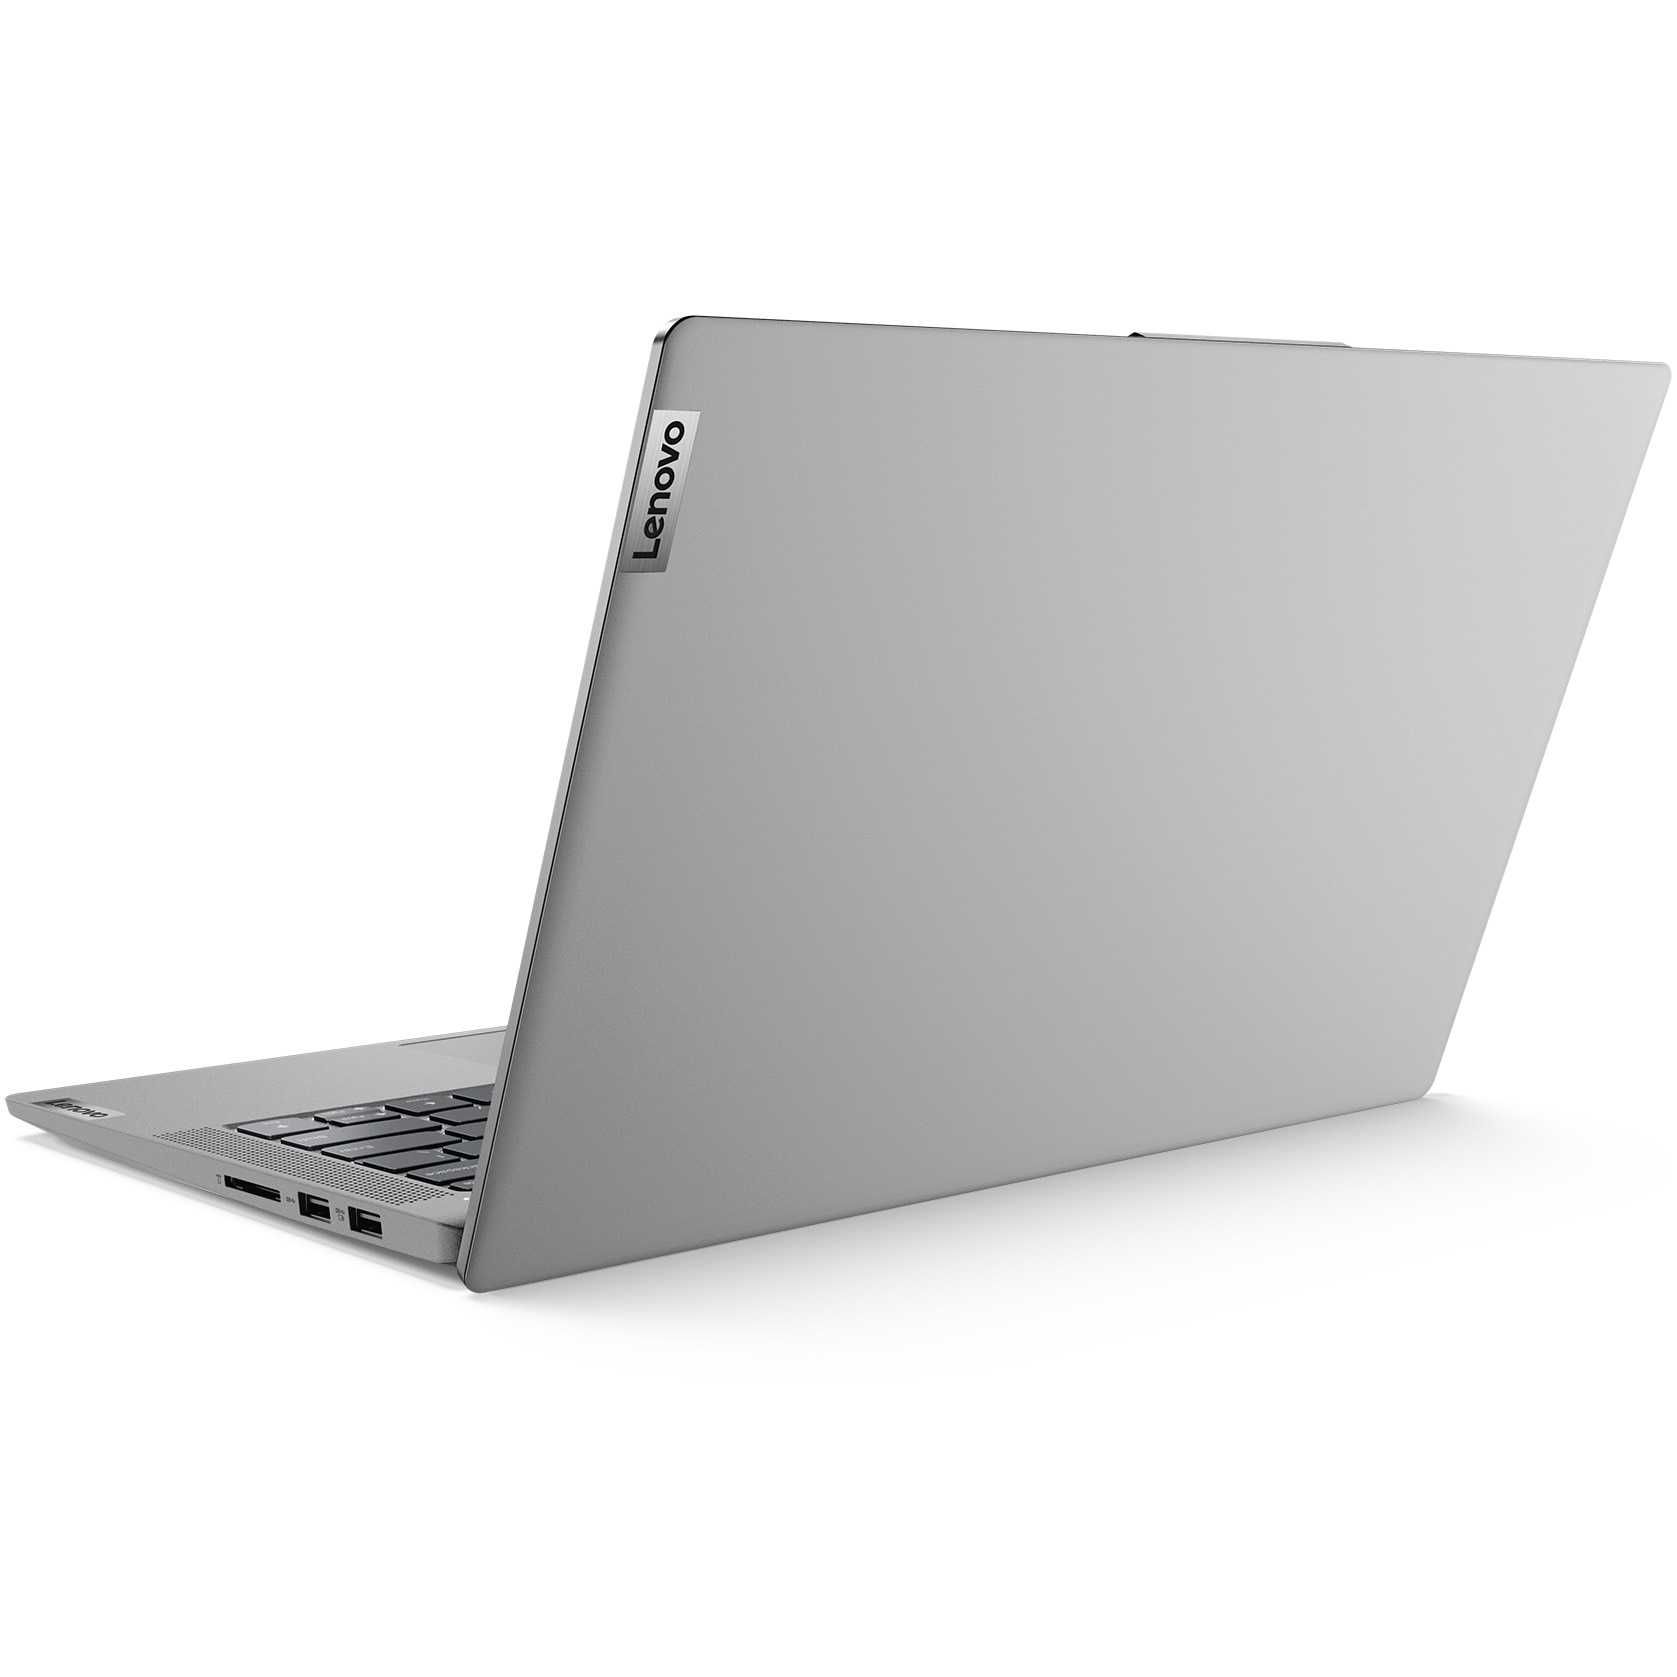 emag SIGILAT - Laptop Lenovo - 4 ANI Garanție - SUPER PREȚ